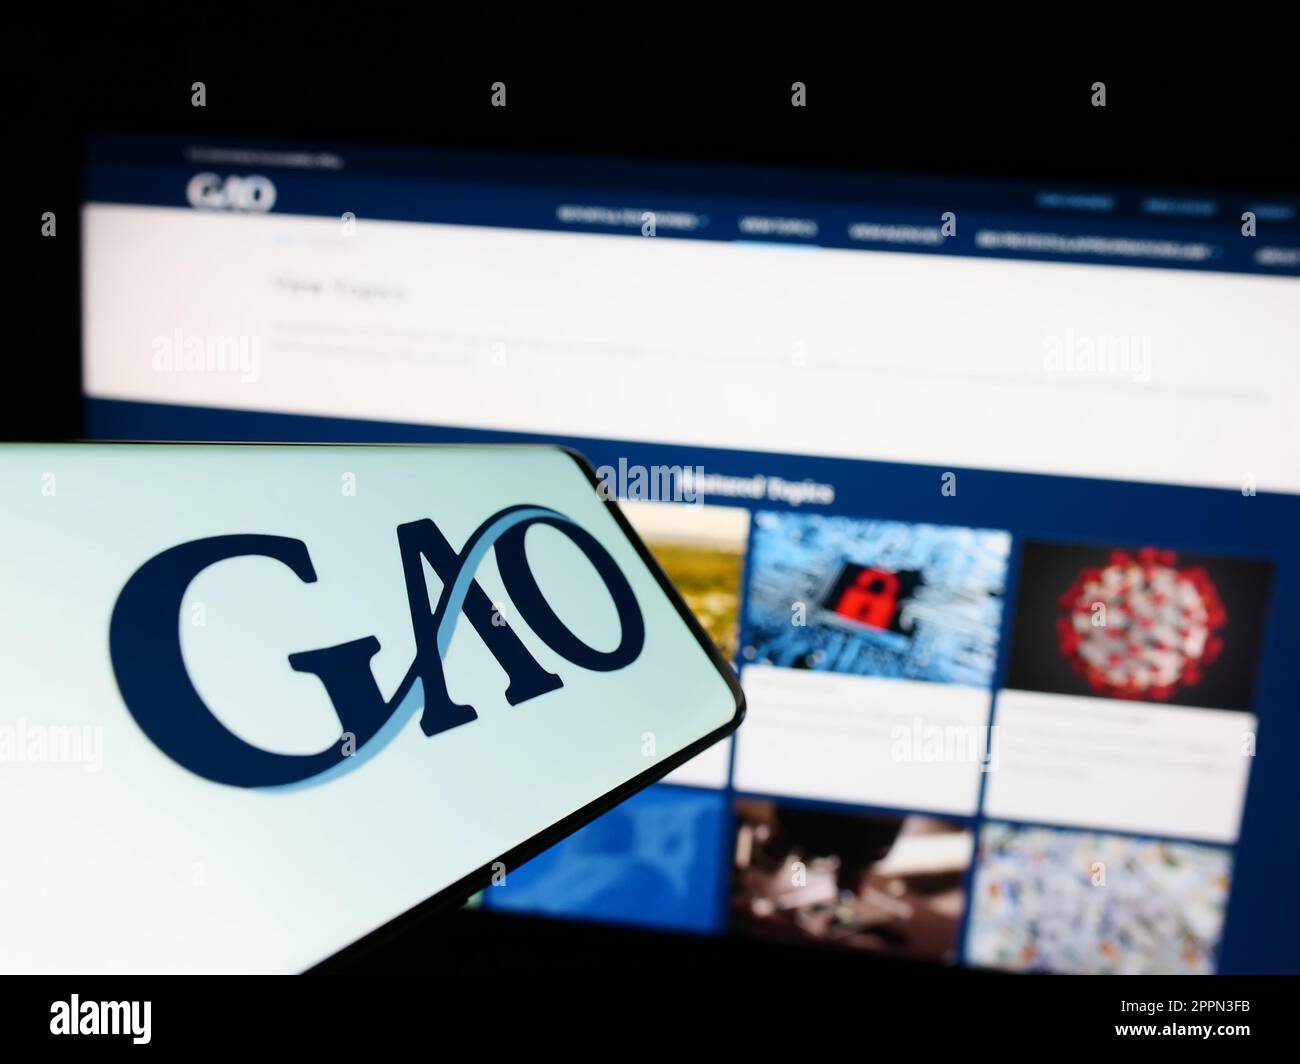 Cellulare con il logo del governo degli Stati Uniti Accountability Office (GAO) sullo schermo di fronte al sito web. Messa a fuoco al centro a destra del display del telefono. Foto Stock